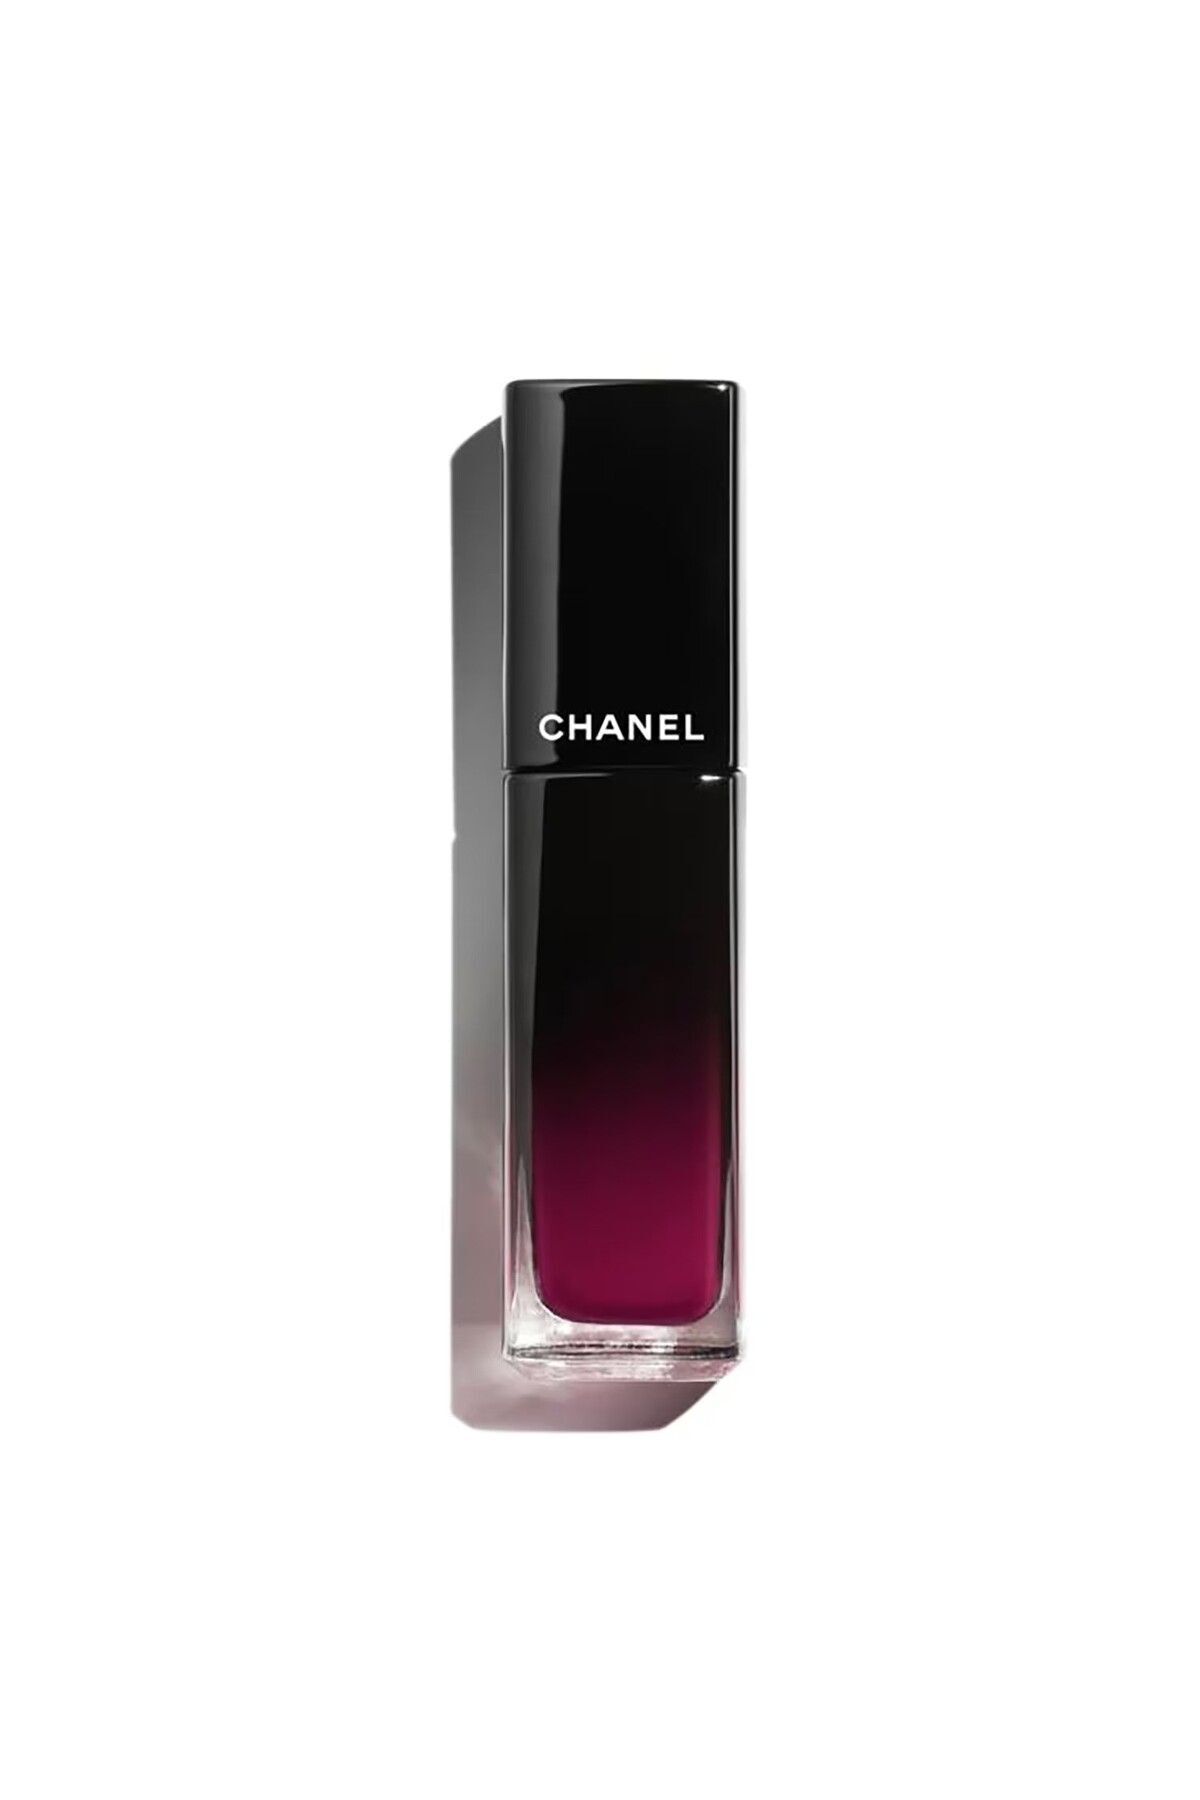 Chanel ROUGE ALLURE LAQUE - 12 Saat Boyunca Satensi Parlaklık, Renk Ve Nem Sağlayan Likit Ruj 5.5 ml